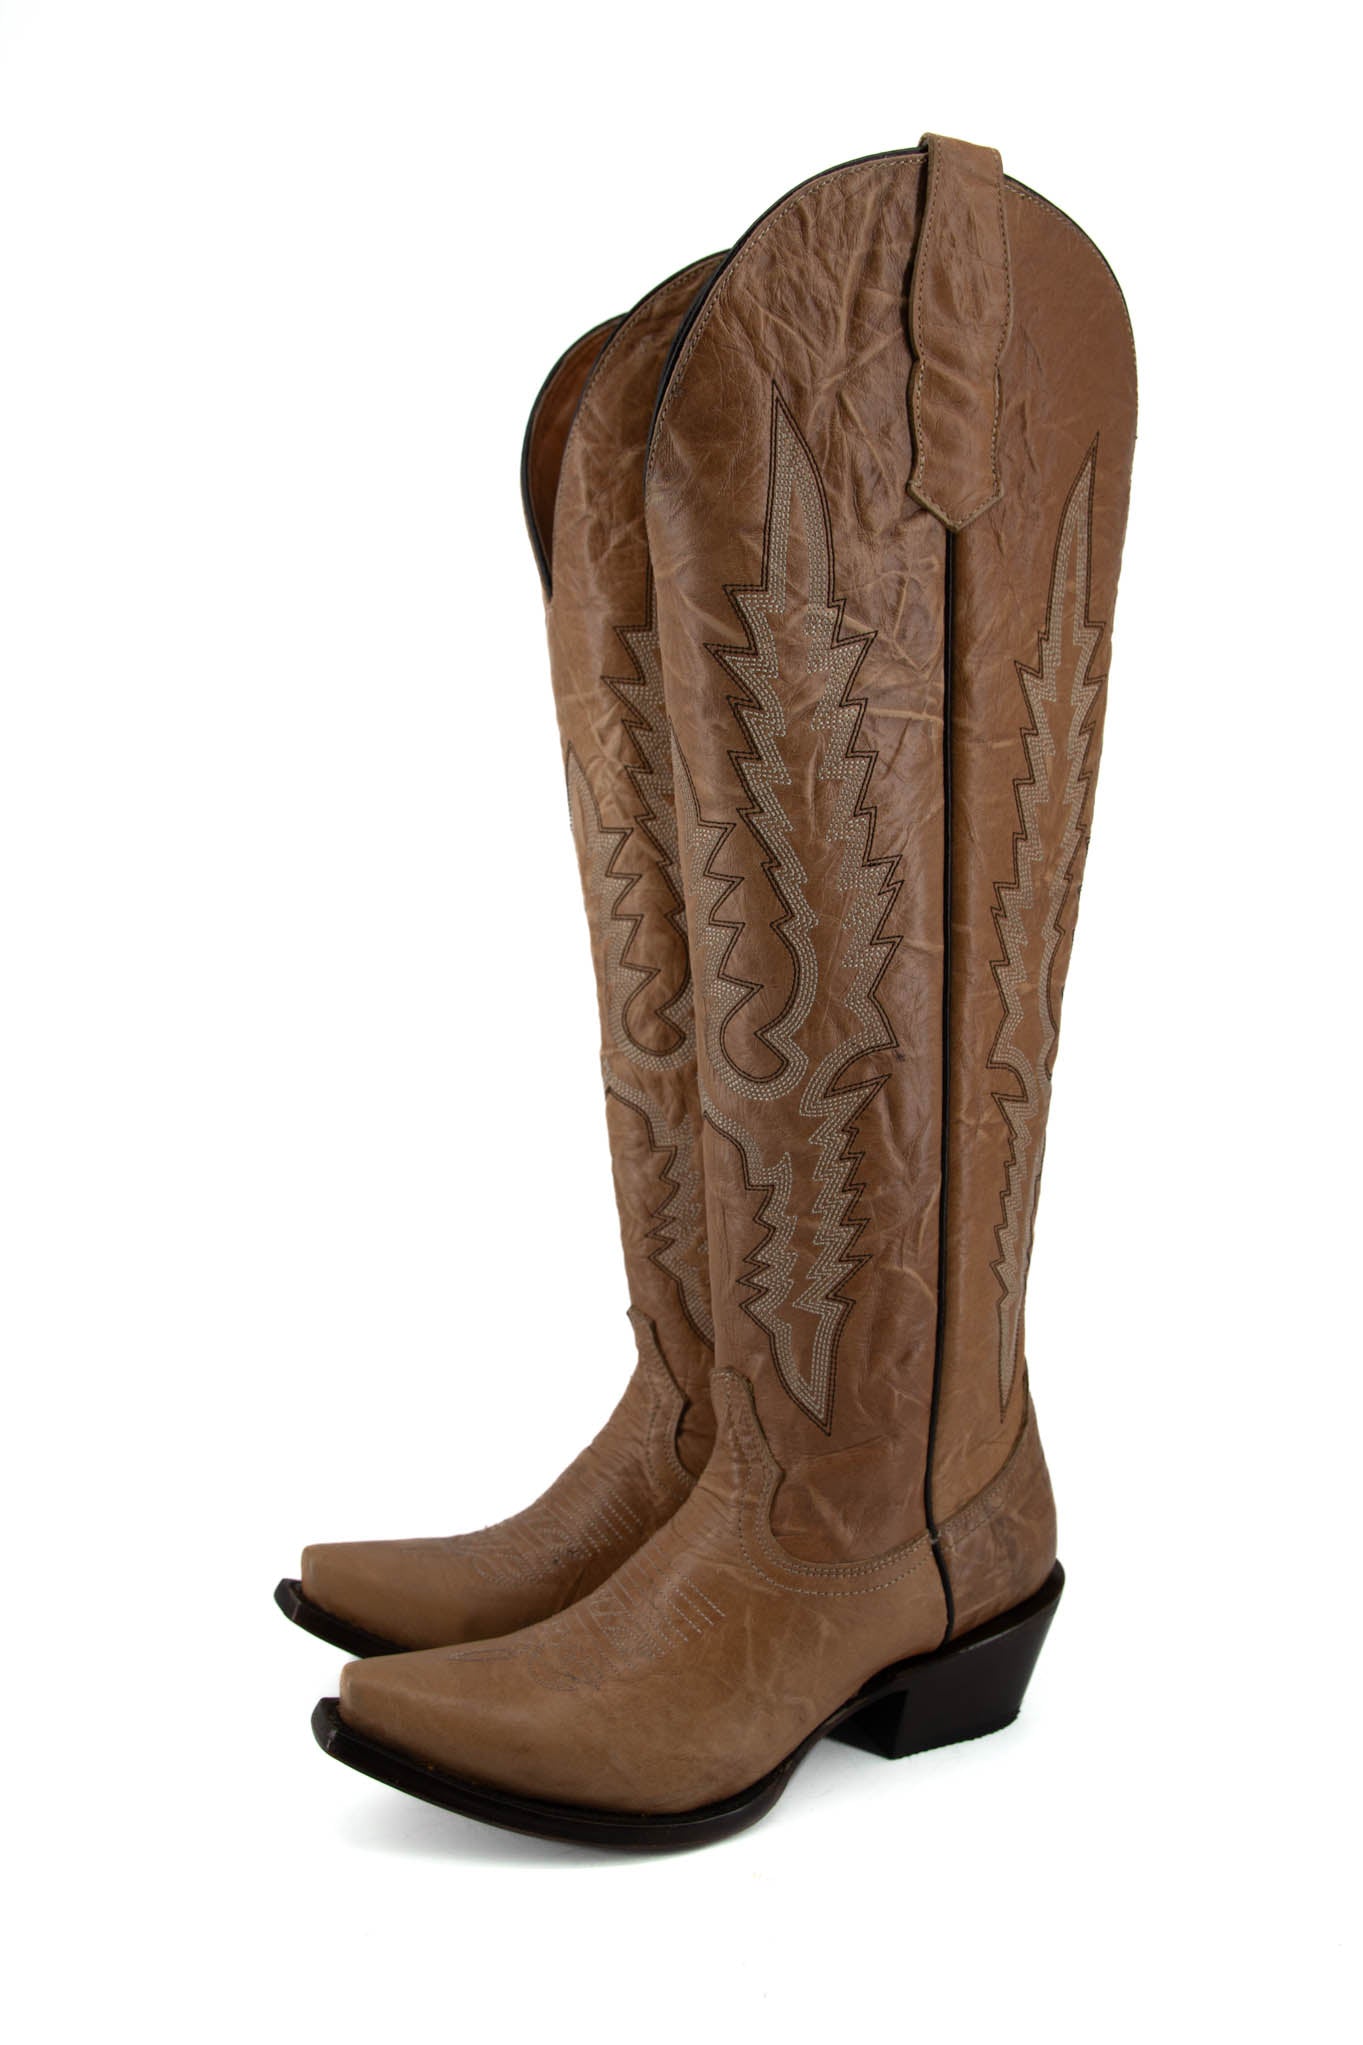 Women's Wide Calf Friendly Boots – Rock'Em